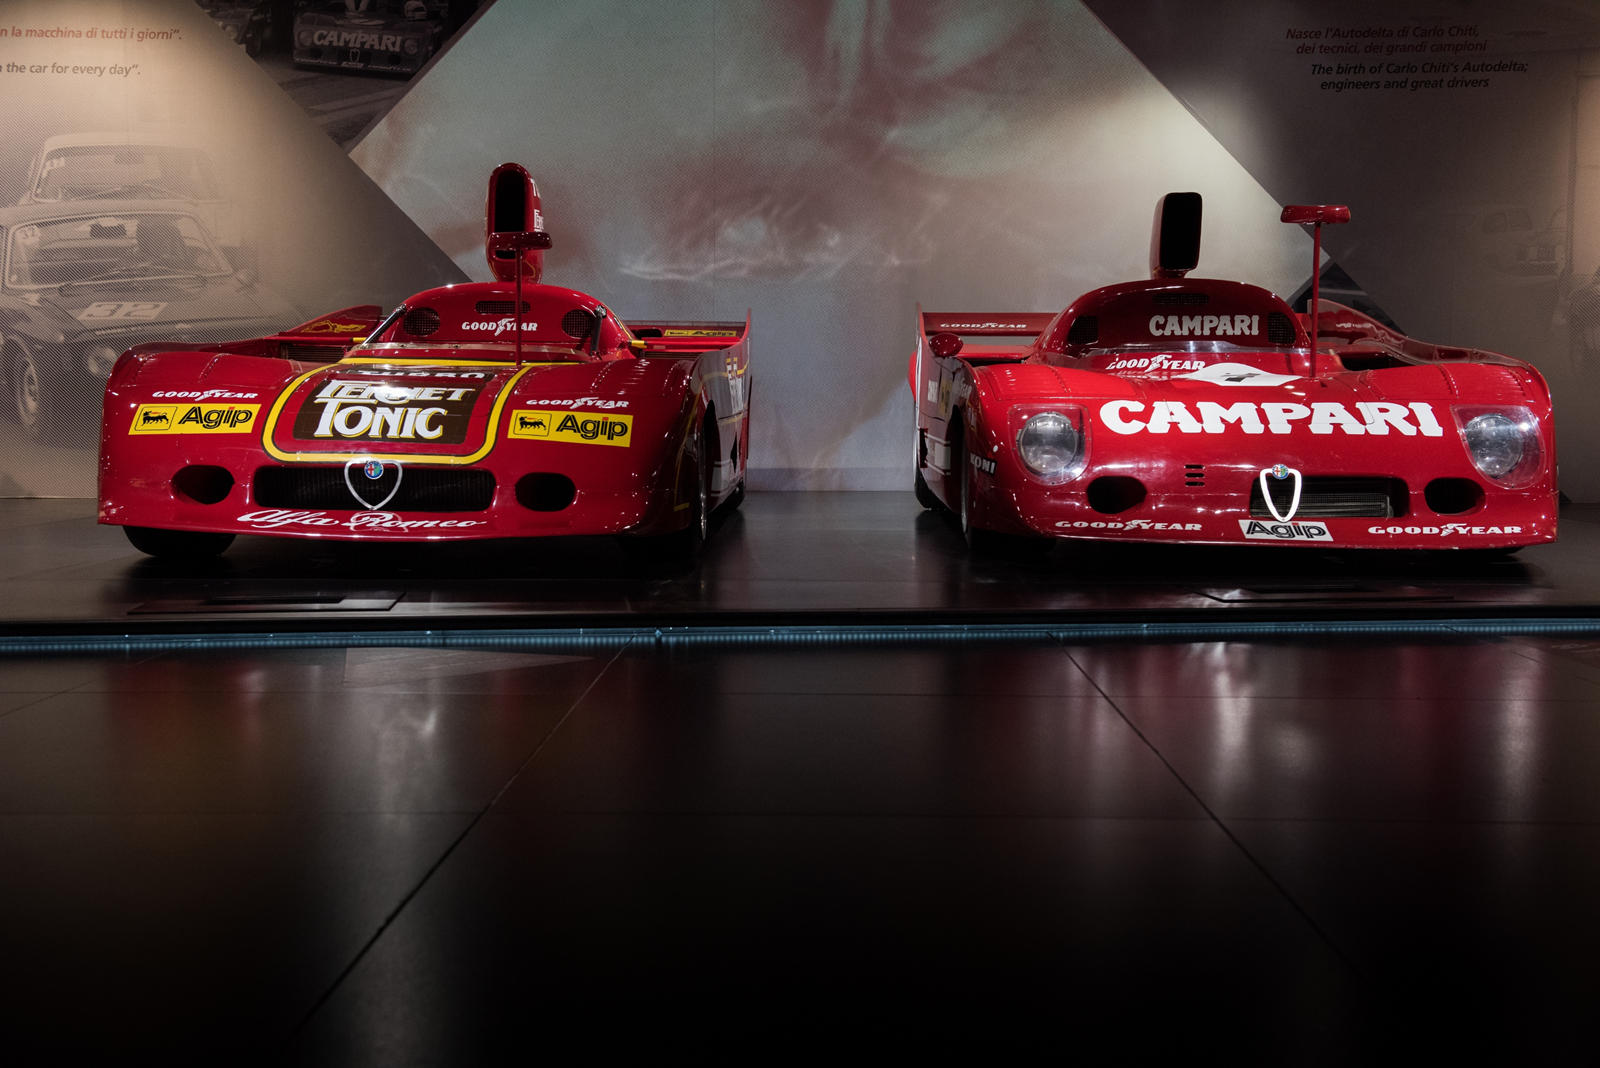 Музей был открыт для СМИ и публики, но придерживался действующих протоколов безопасности. Были выставлены и такие классические автомоюили как Alfa Romeo Spider, а также потрясающая Giulia, диапазон, который недавно был возглавлен маниакальной GTA.